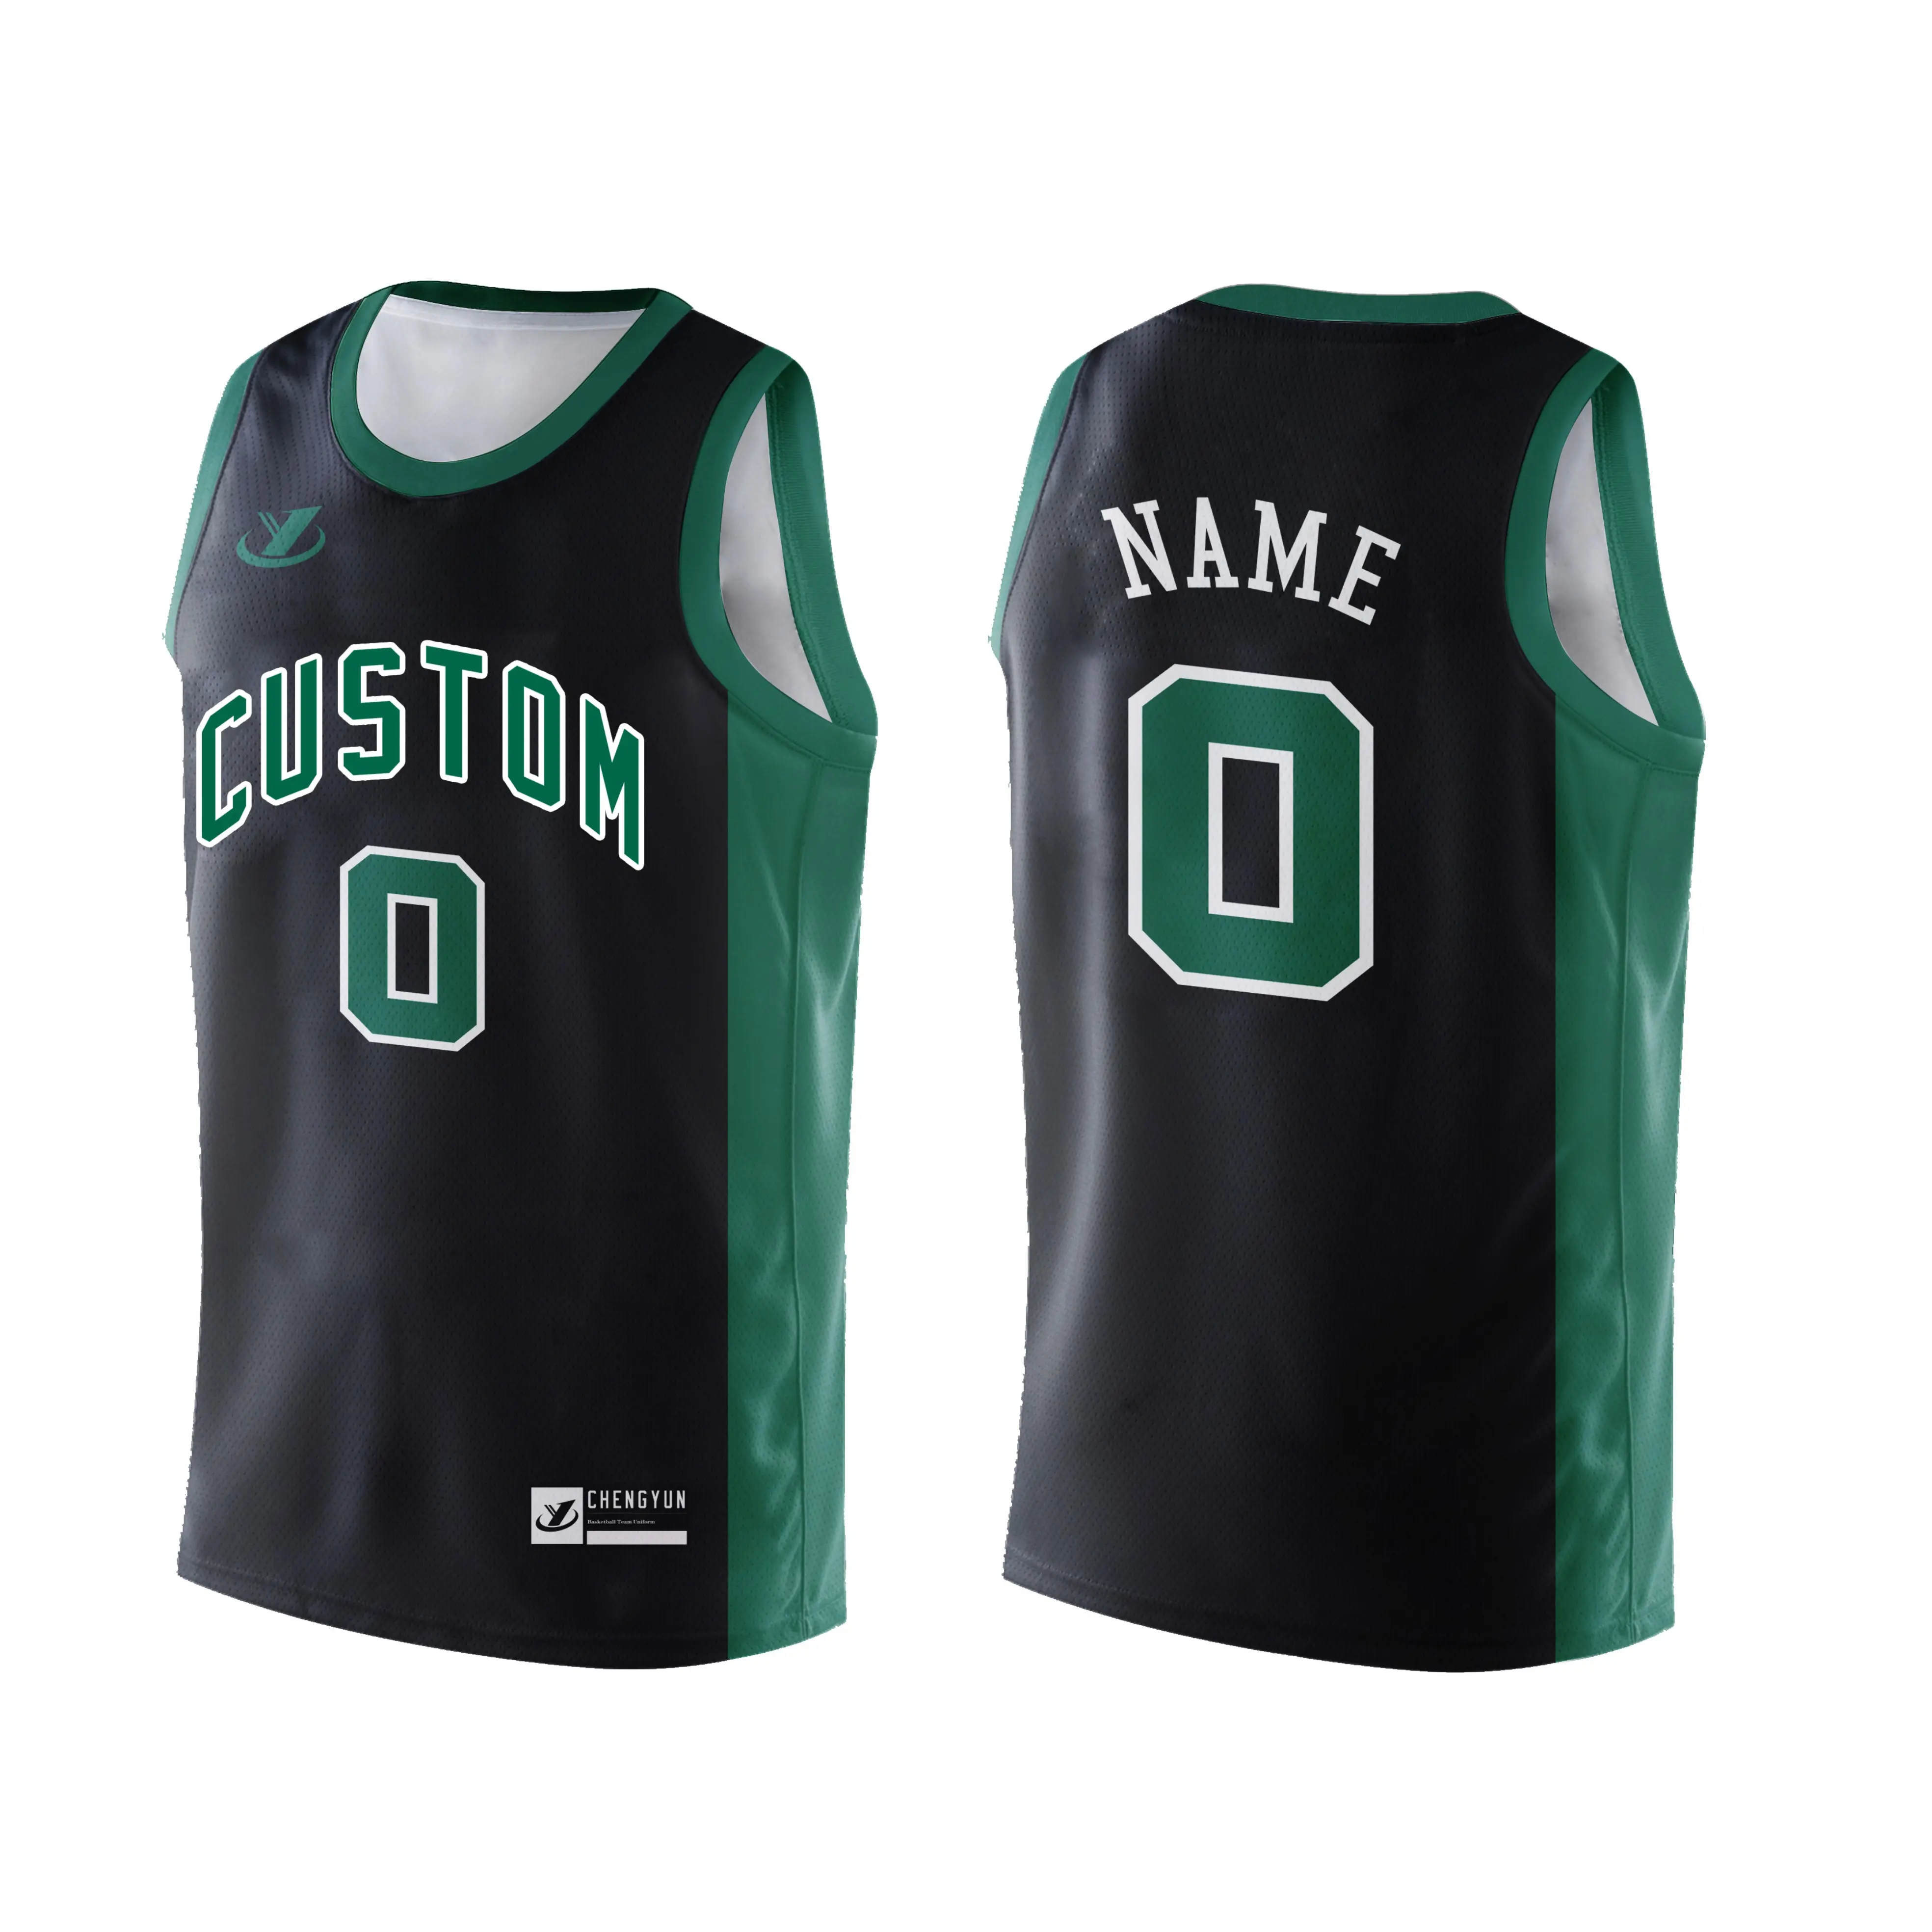 Conjunto de uniforme de baloncesto bordado Reversible con diseño de sublimación personalizado, el mejor uniforme de camiseta de baloncesto para hombres al por mayor